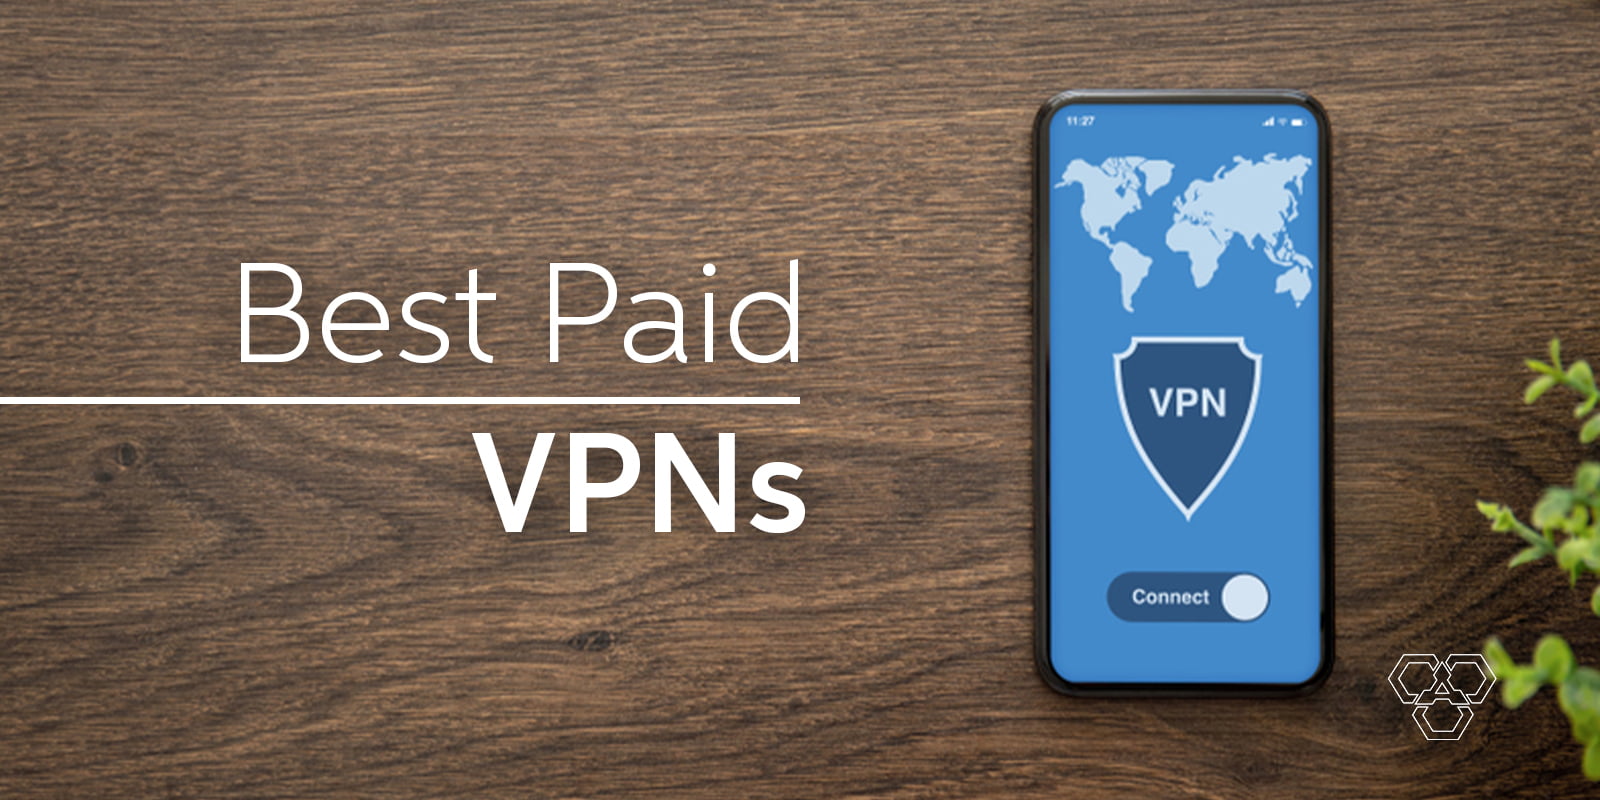 Best Paid VPNs